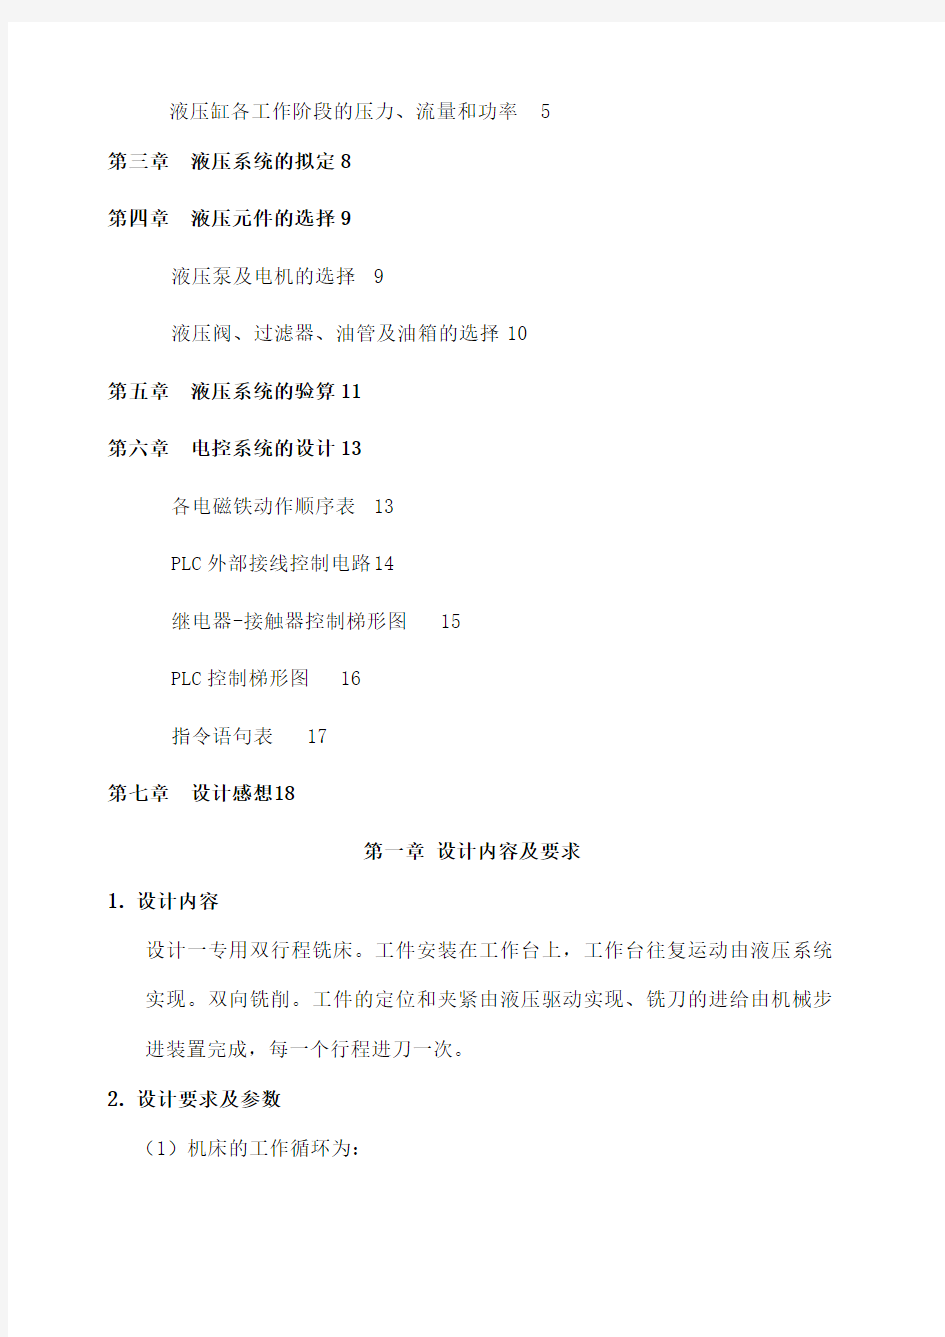 华中科技大学液压传动课程设计说明书完整版